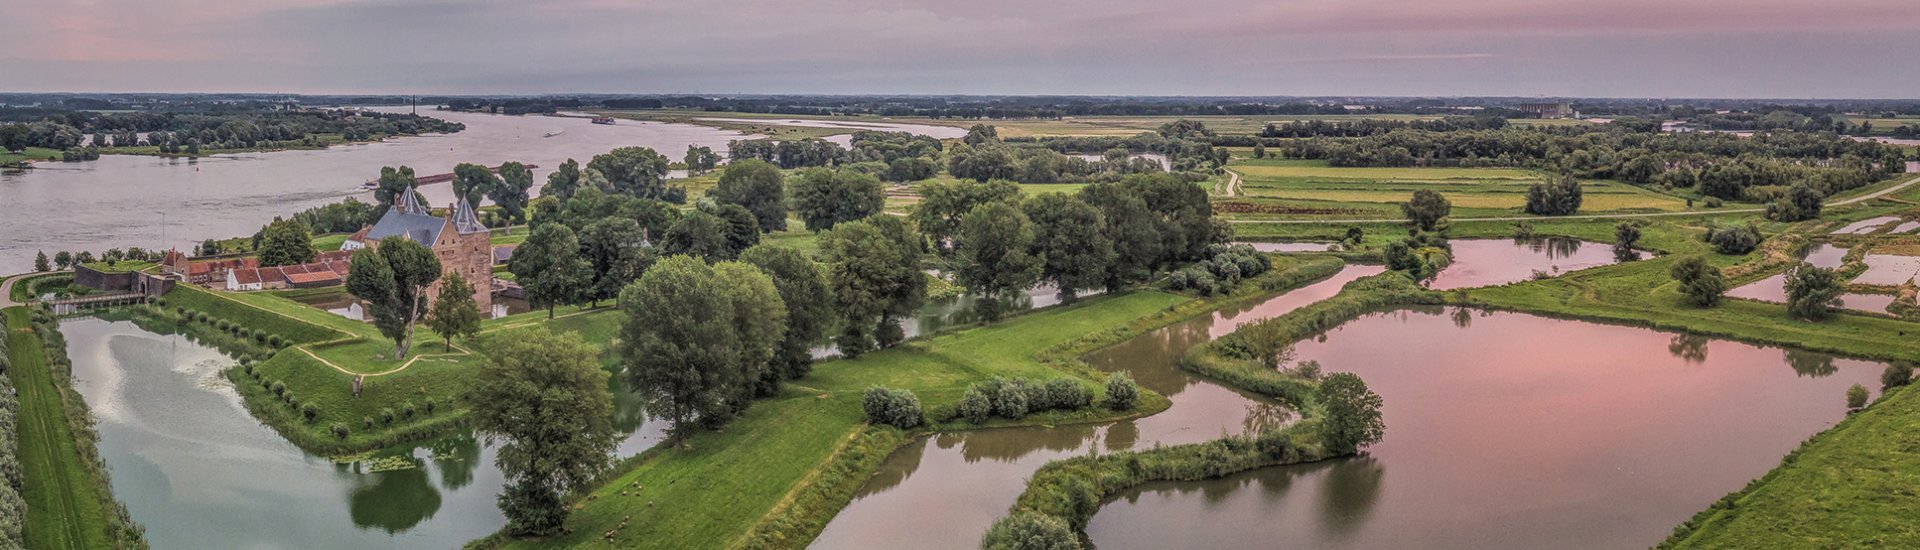 Slot Loevestein maakt deel uit van de Nieuwe Hollandse Waterlinie